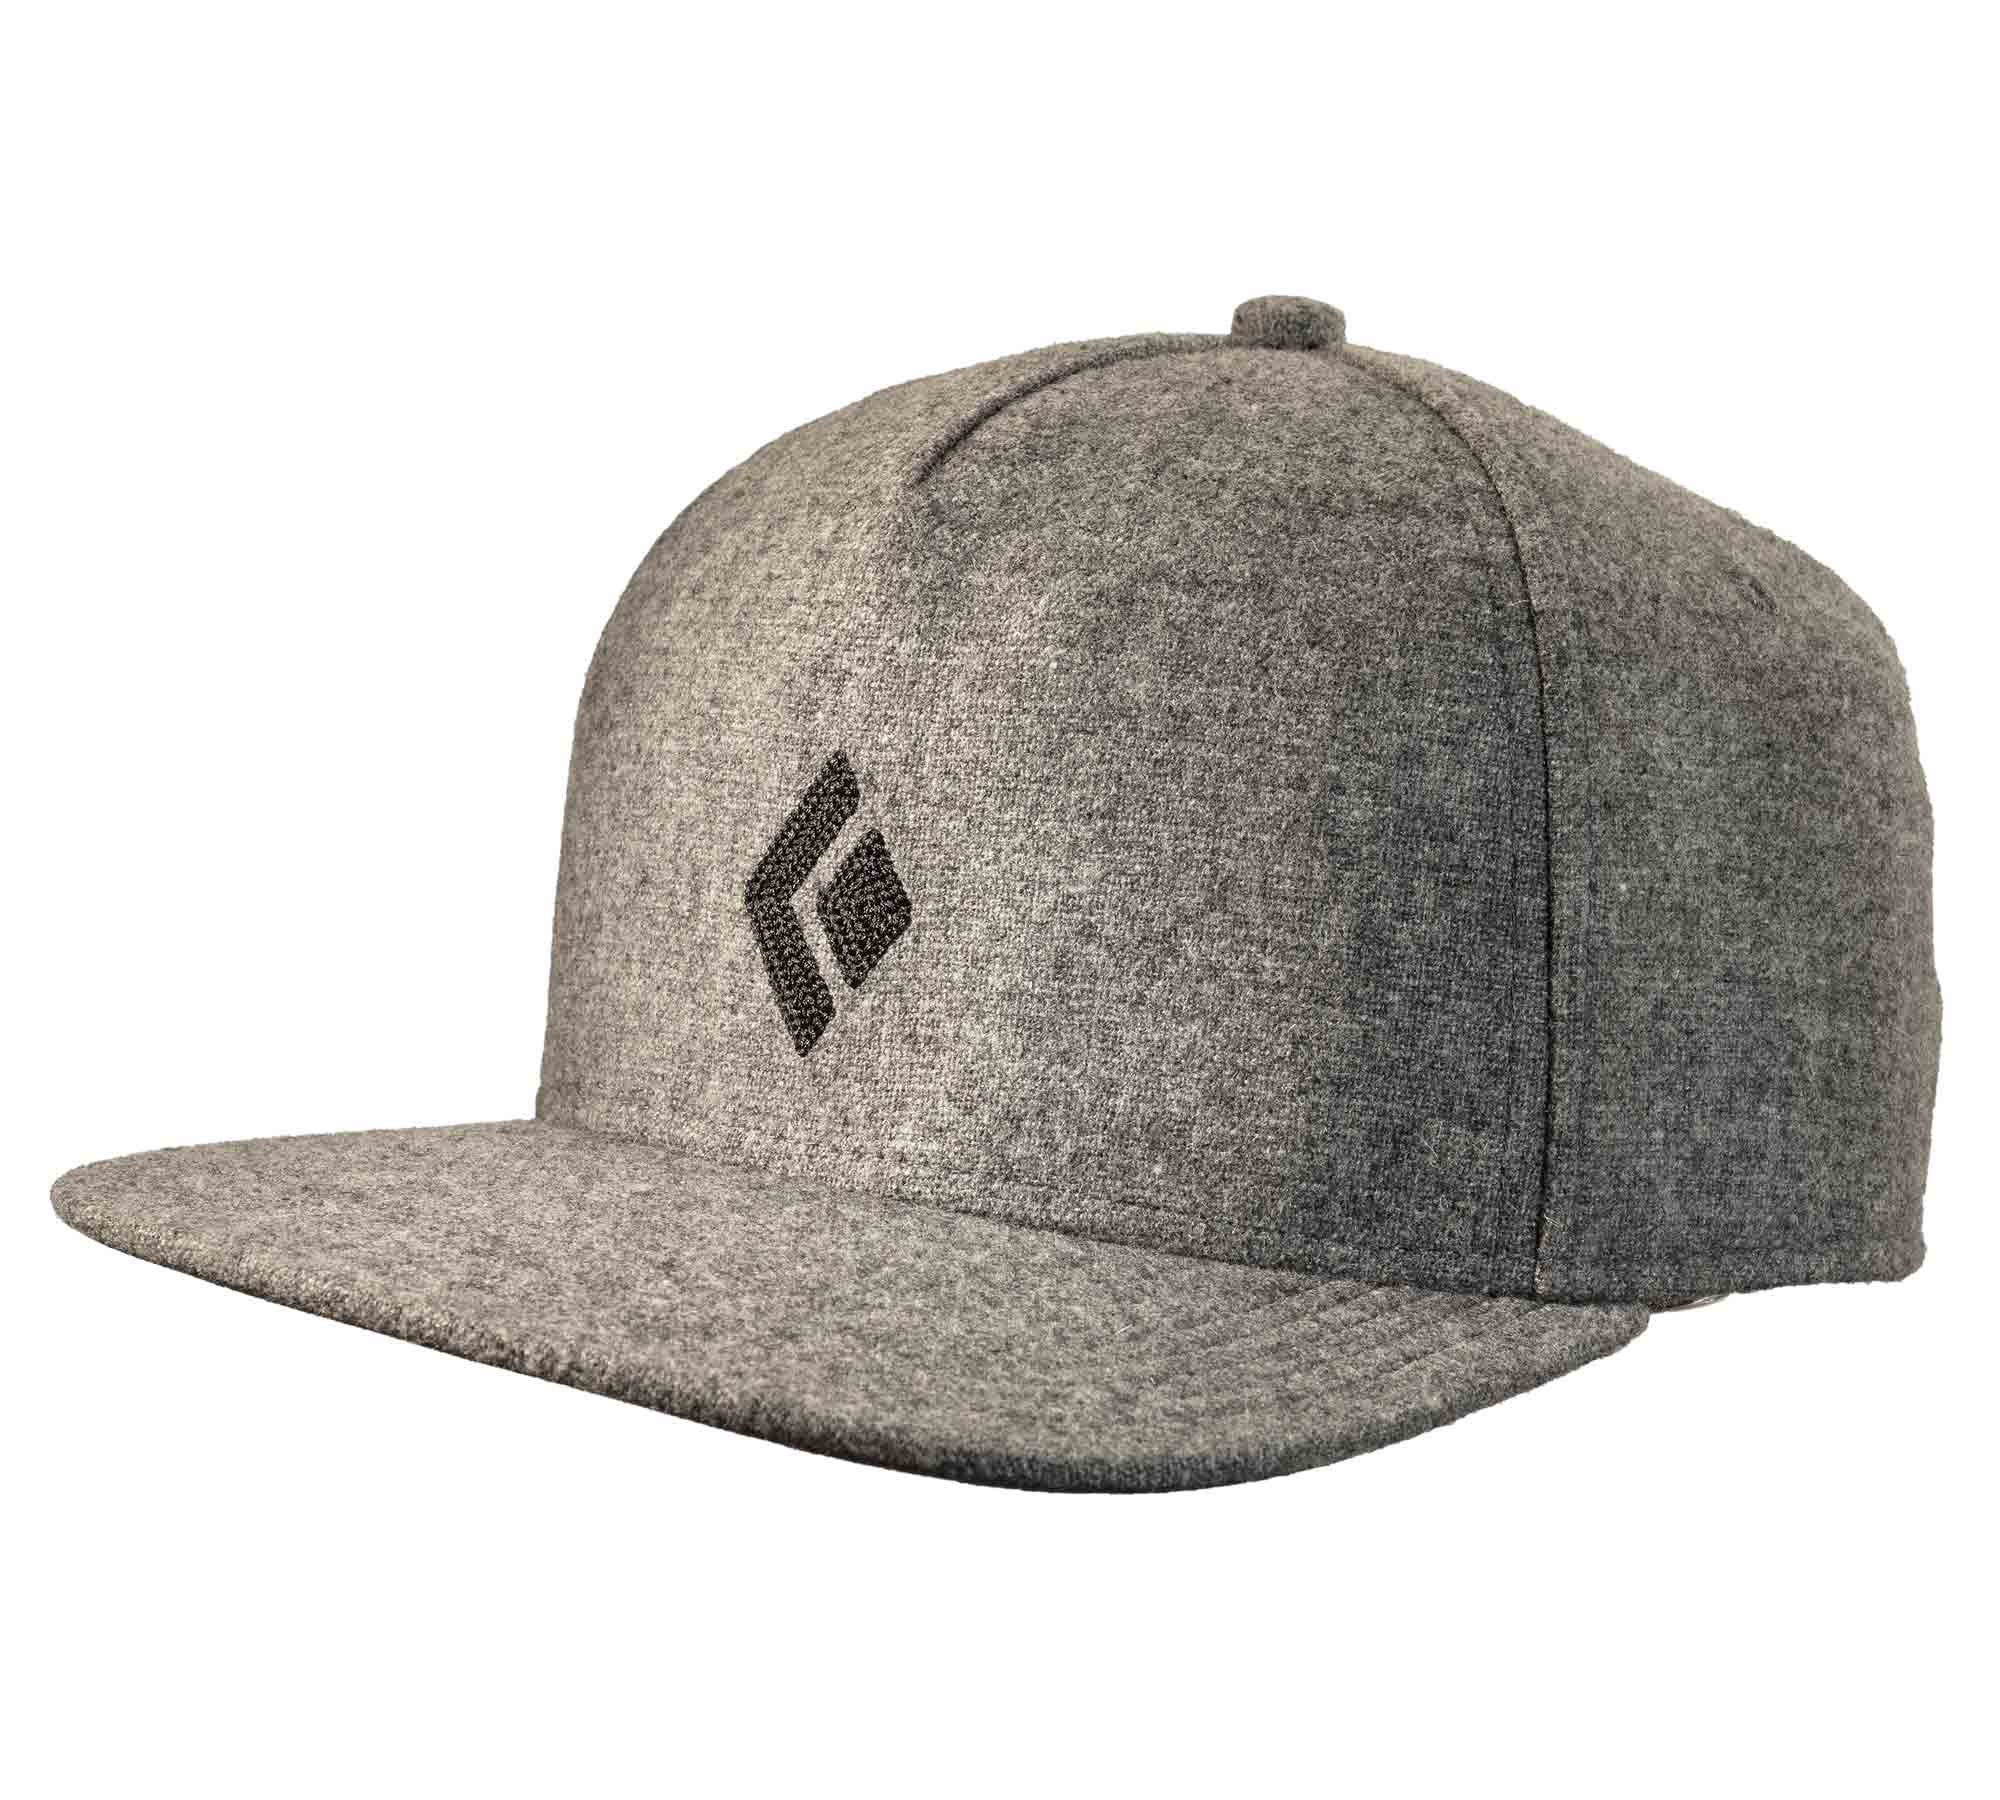 Wool Trucker Hat - Black Diamond Gear